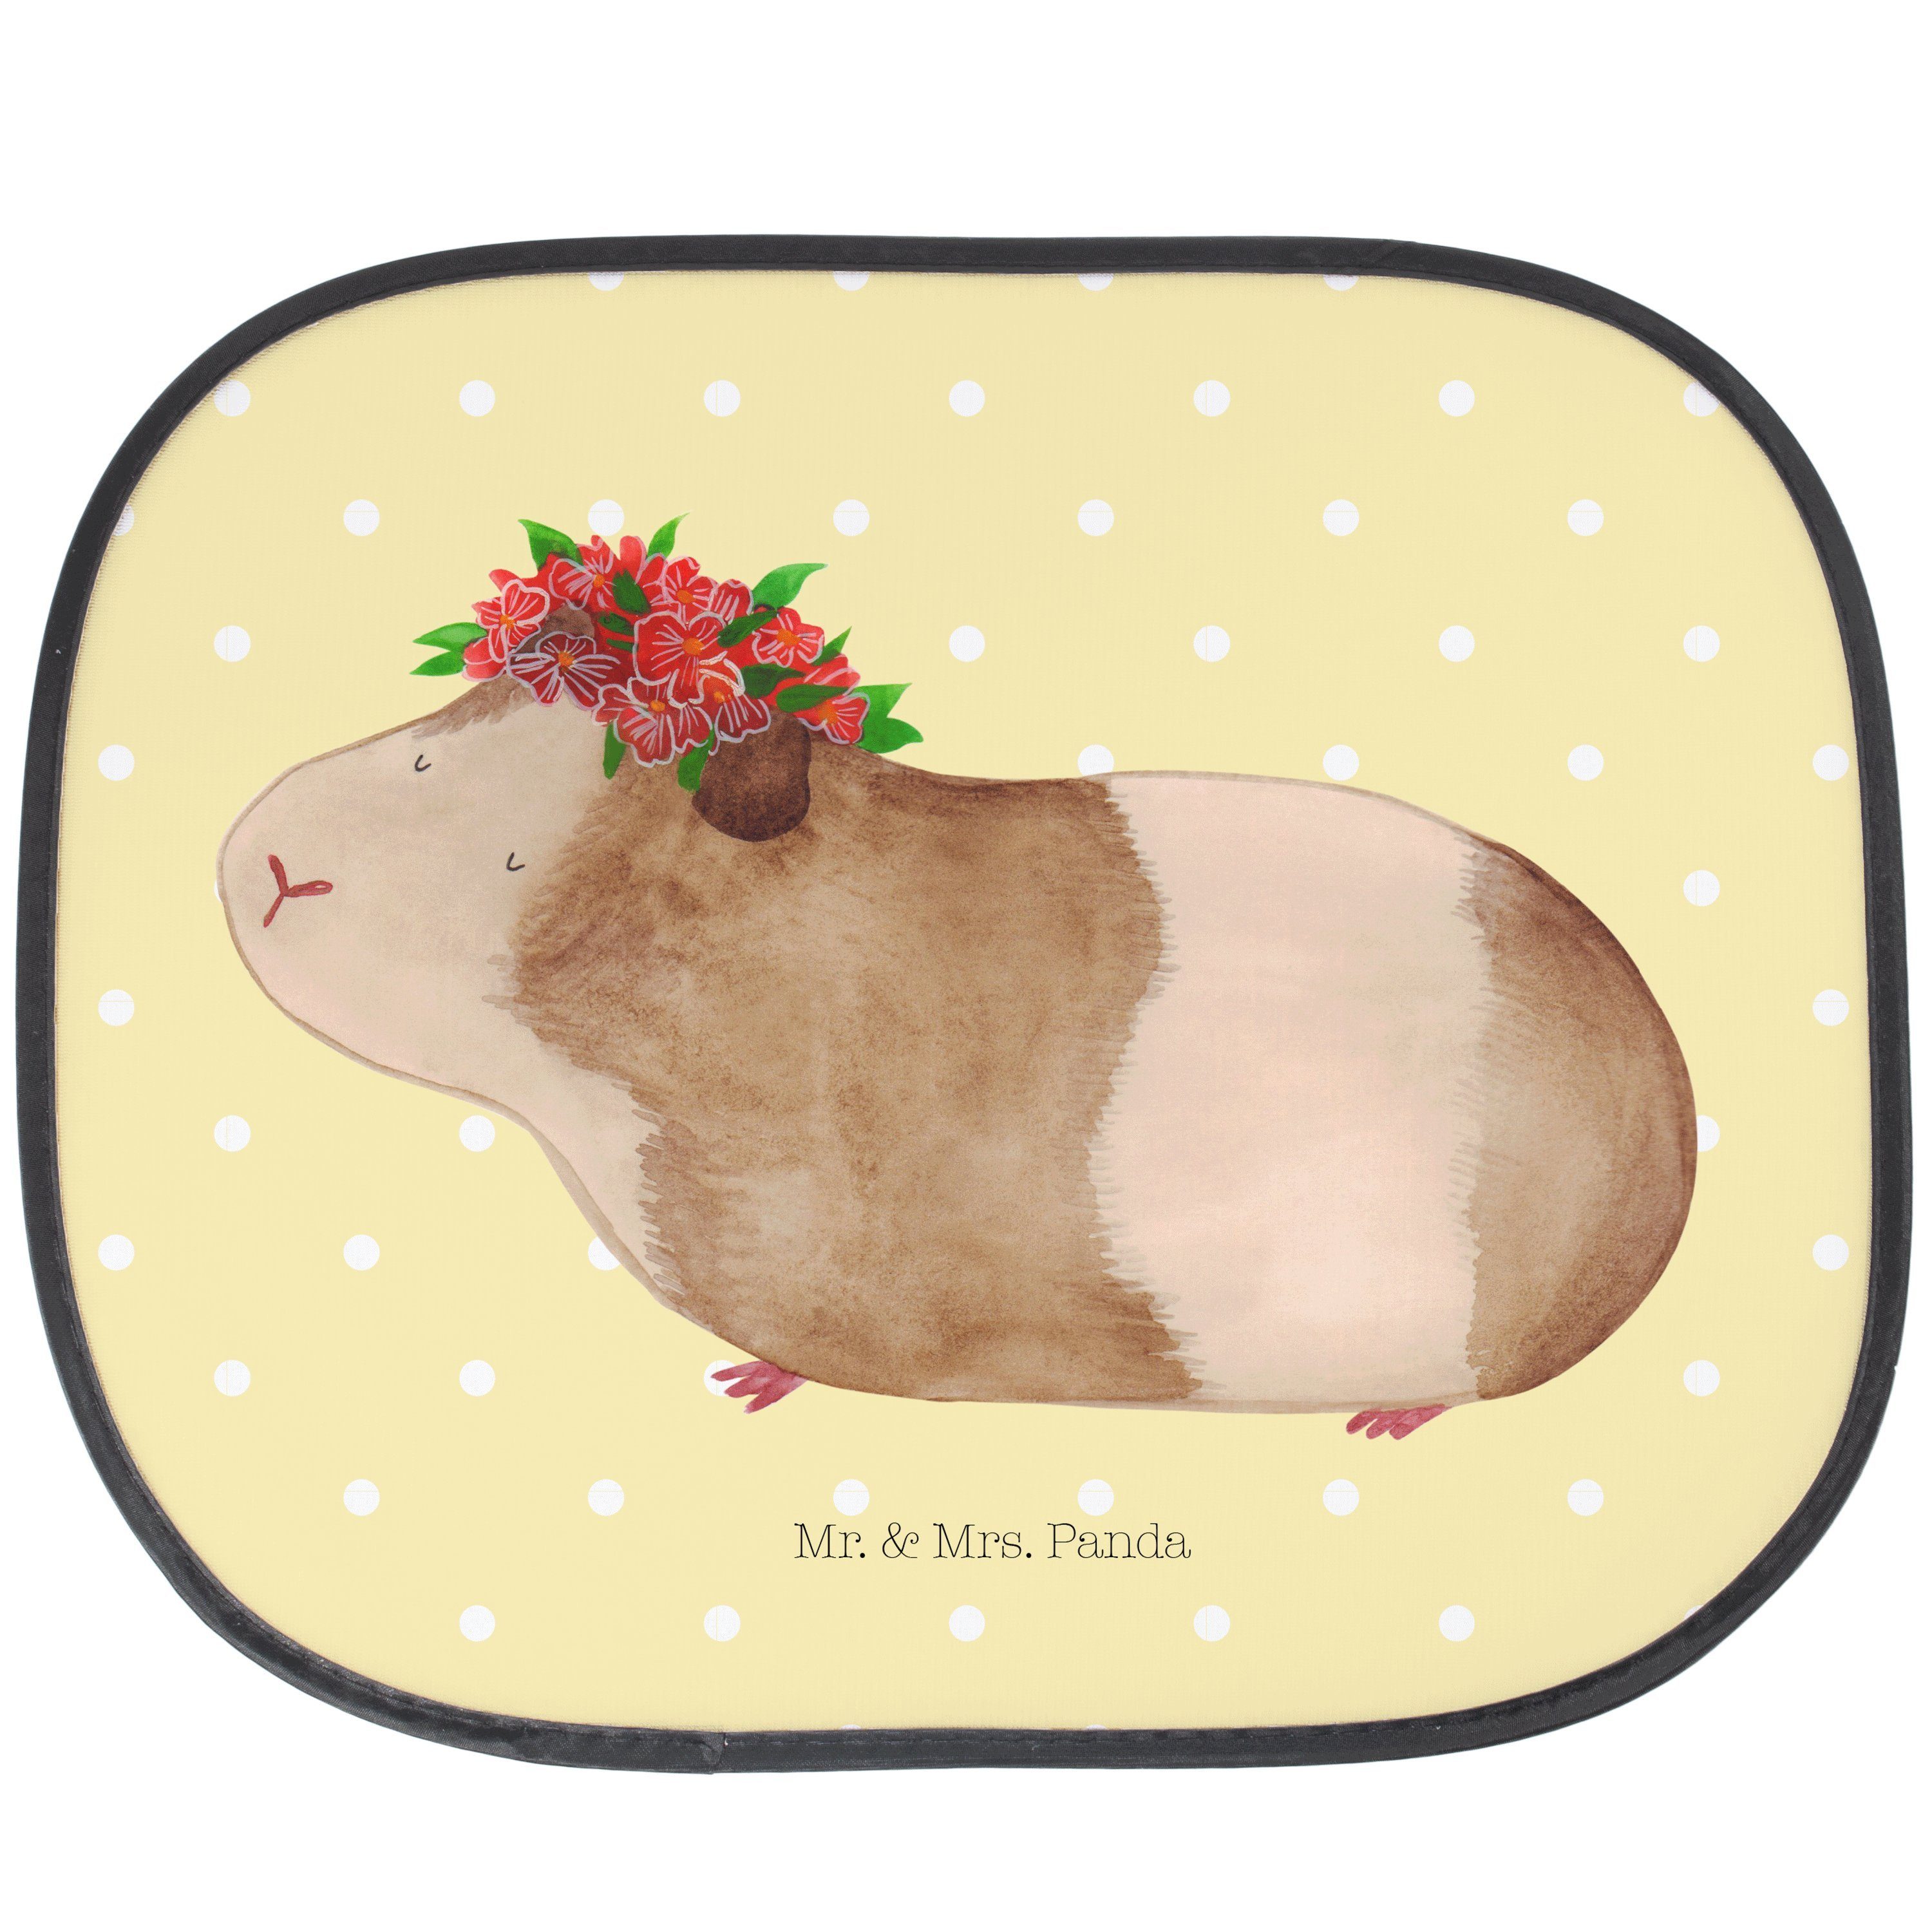 Sonnenschutz Meerschweinchen weise - Gelb Pastell - Geschenk, Tiere, Blumenkind, G, Mr. & Mrs. Panda, Seidenmatt